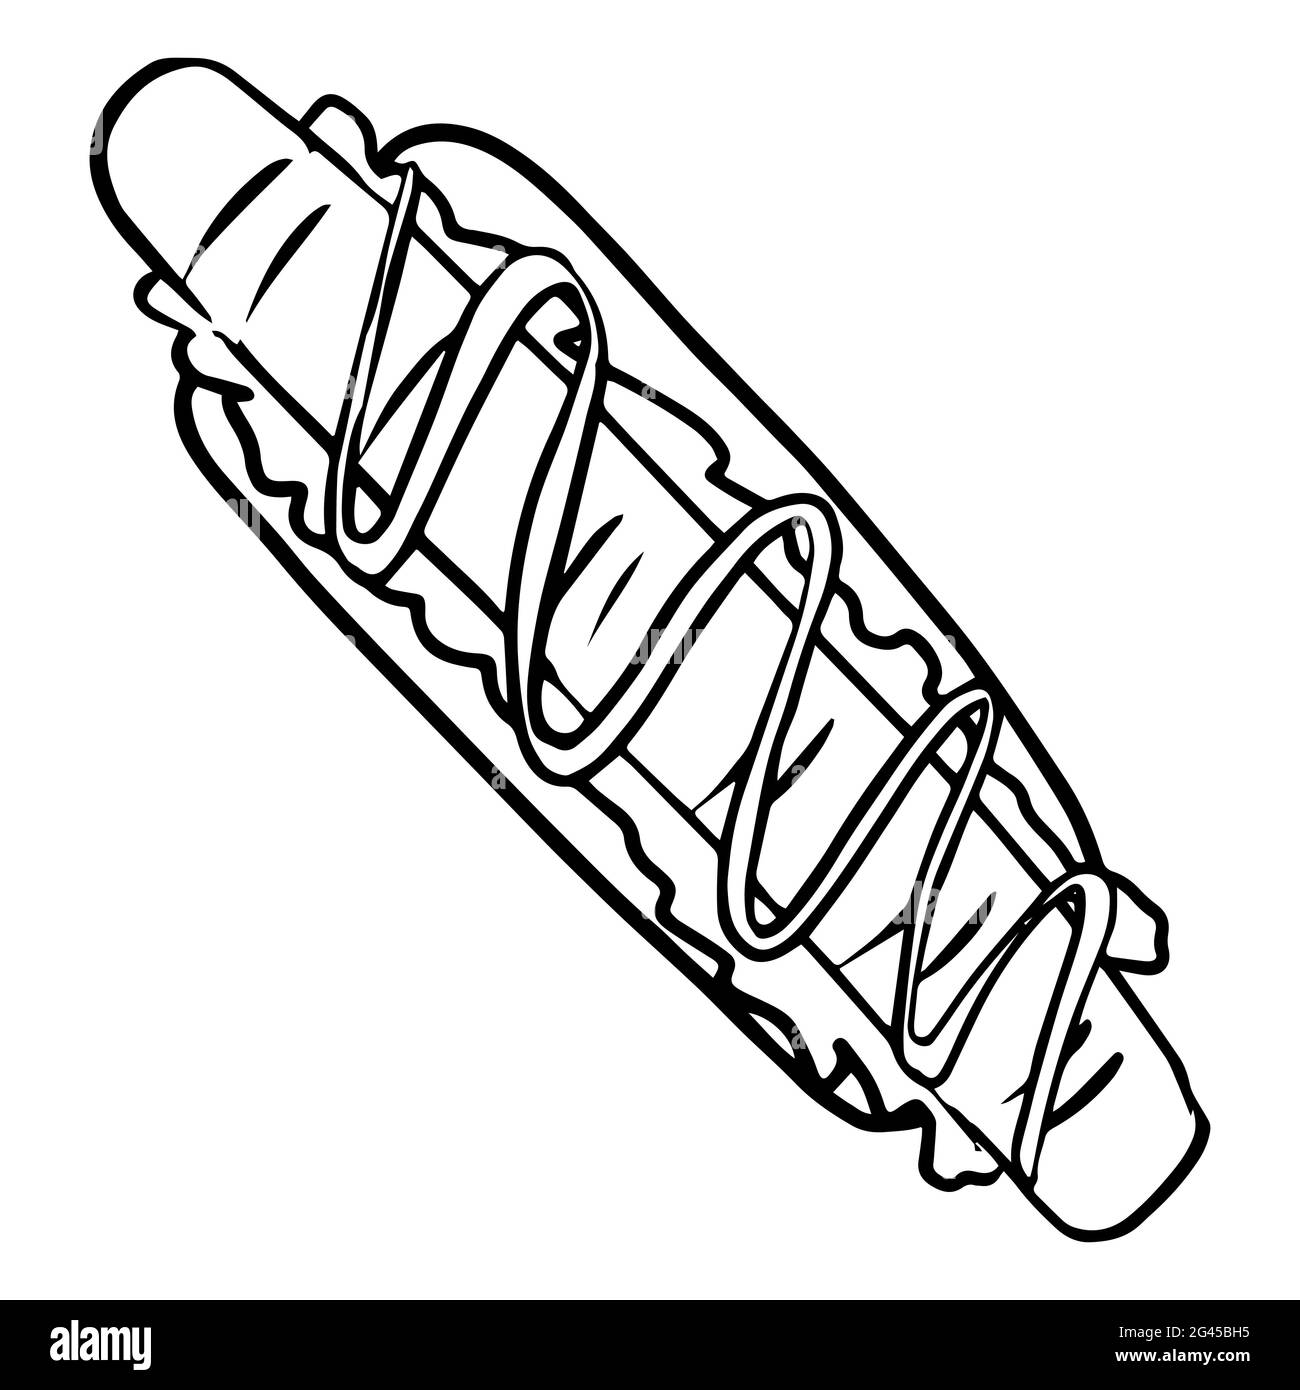 Hot dog dessiné à la main avec illustration de moutarde en noir et blanc. Illustration de Vecteur